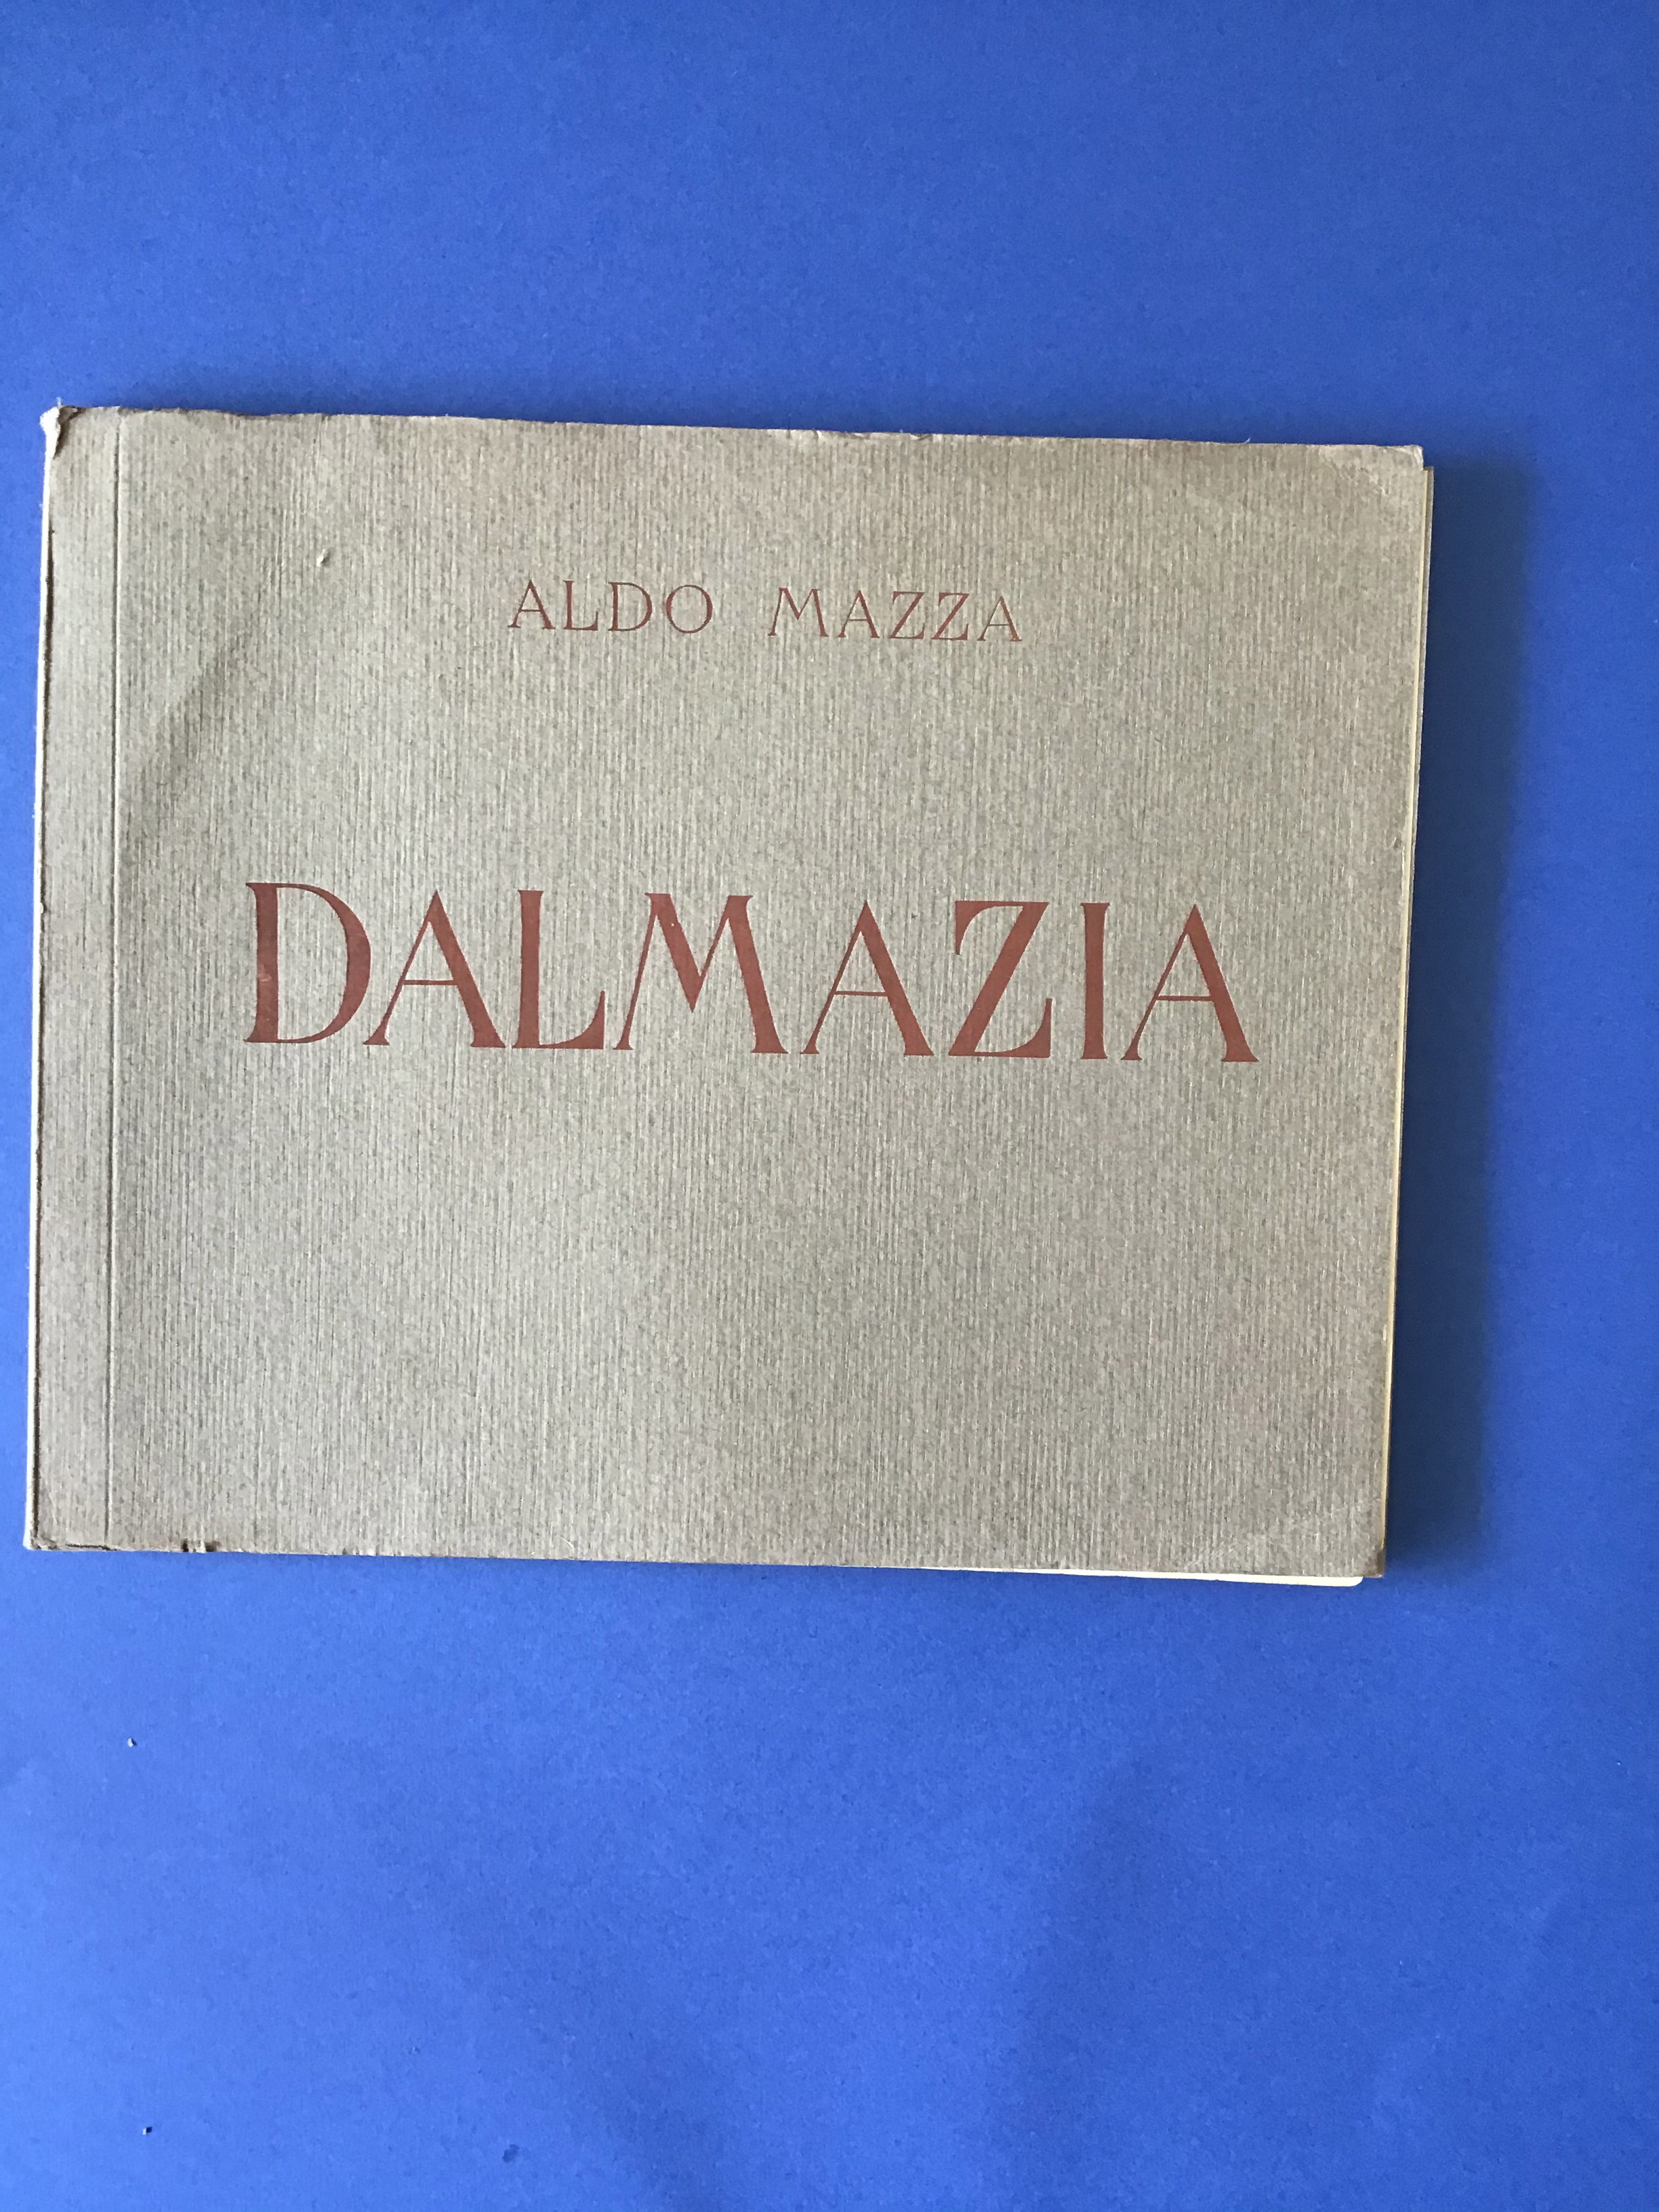 1919 Dalmazia Aldo Mazza con 25 tavole a colori 